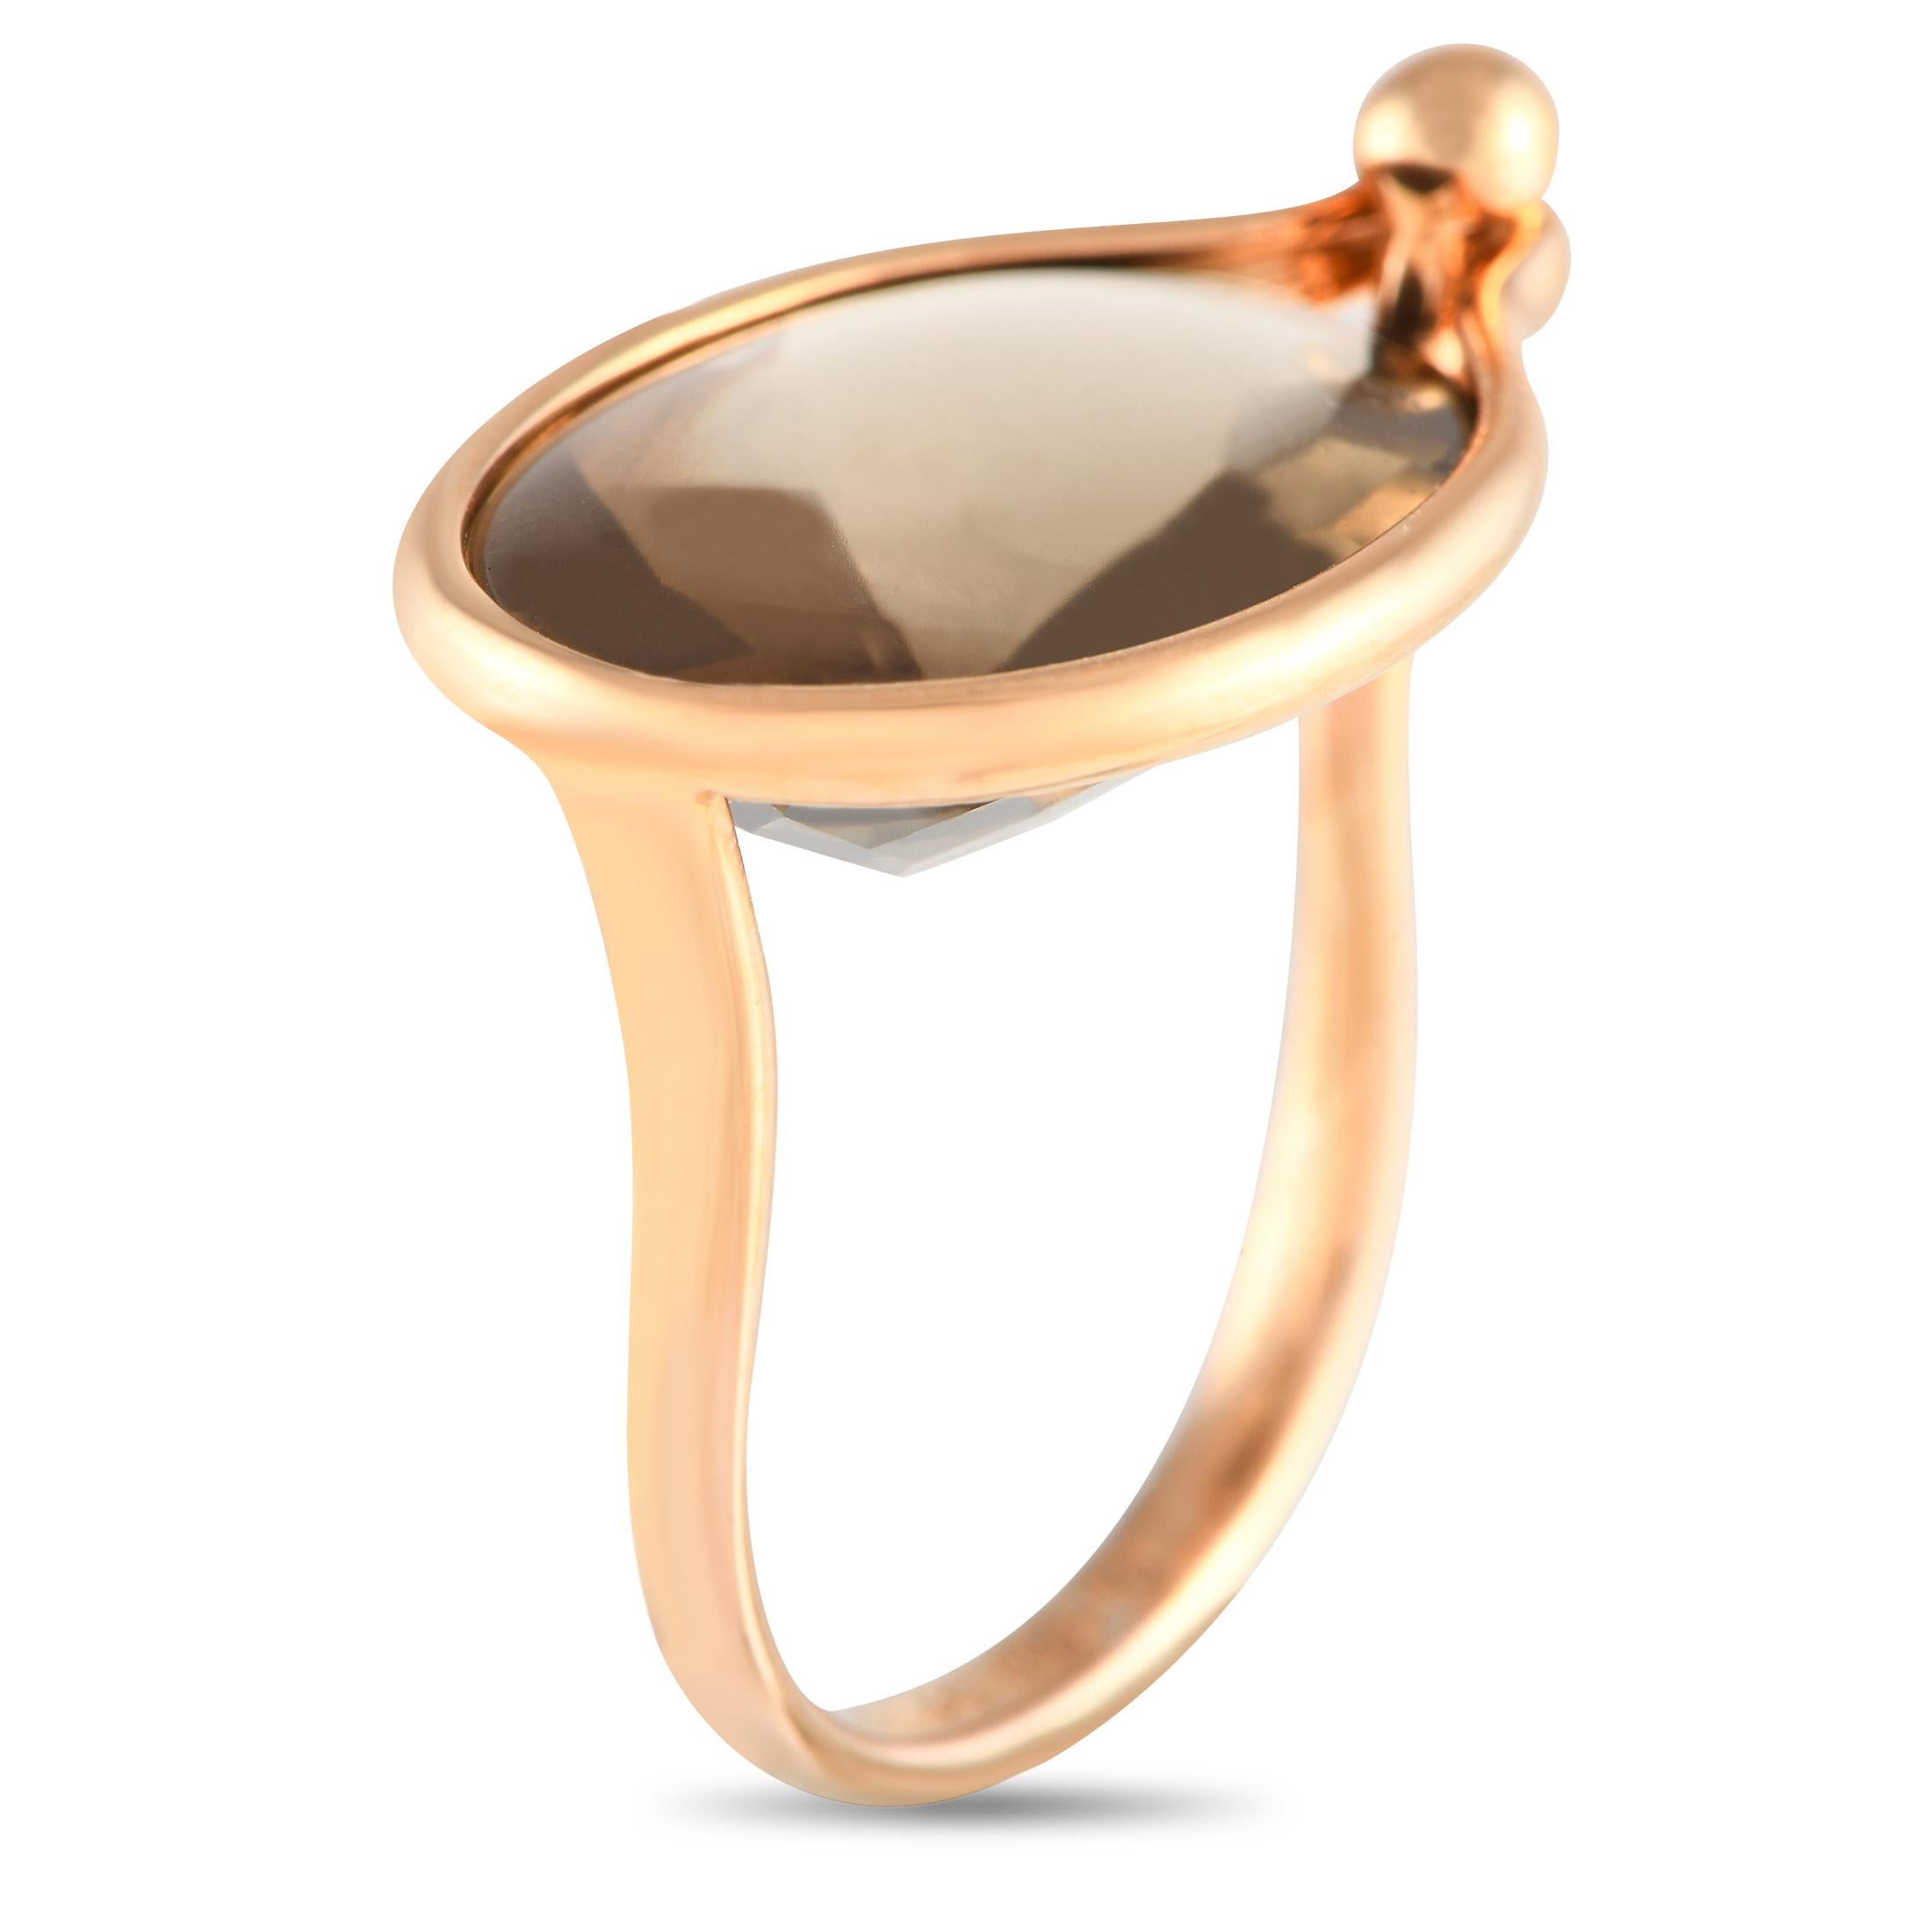 Dieser Ring Savannah von Georg Jensen besticht durch seinen frischen, modernen Stil. Zart und dynamisch zugleich setzt ein Topas im Ovalschliff in der Mitte der einzigartigen Fassung aus 18 Karat Roségold ein Zeichen. Der Ring ist 2 mm breit und hat